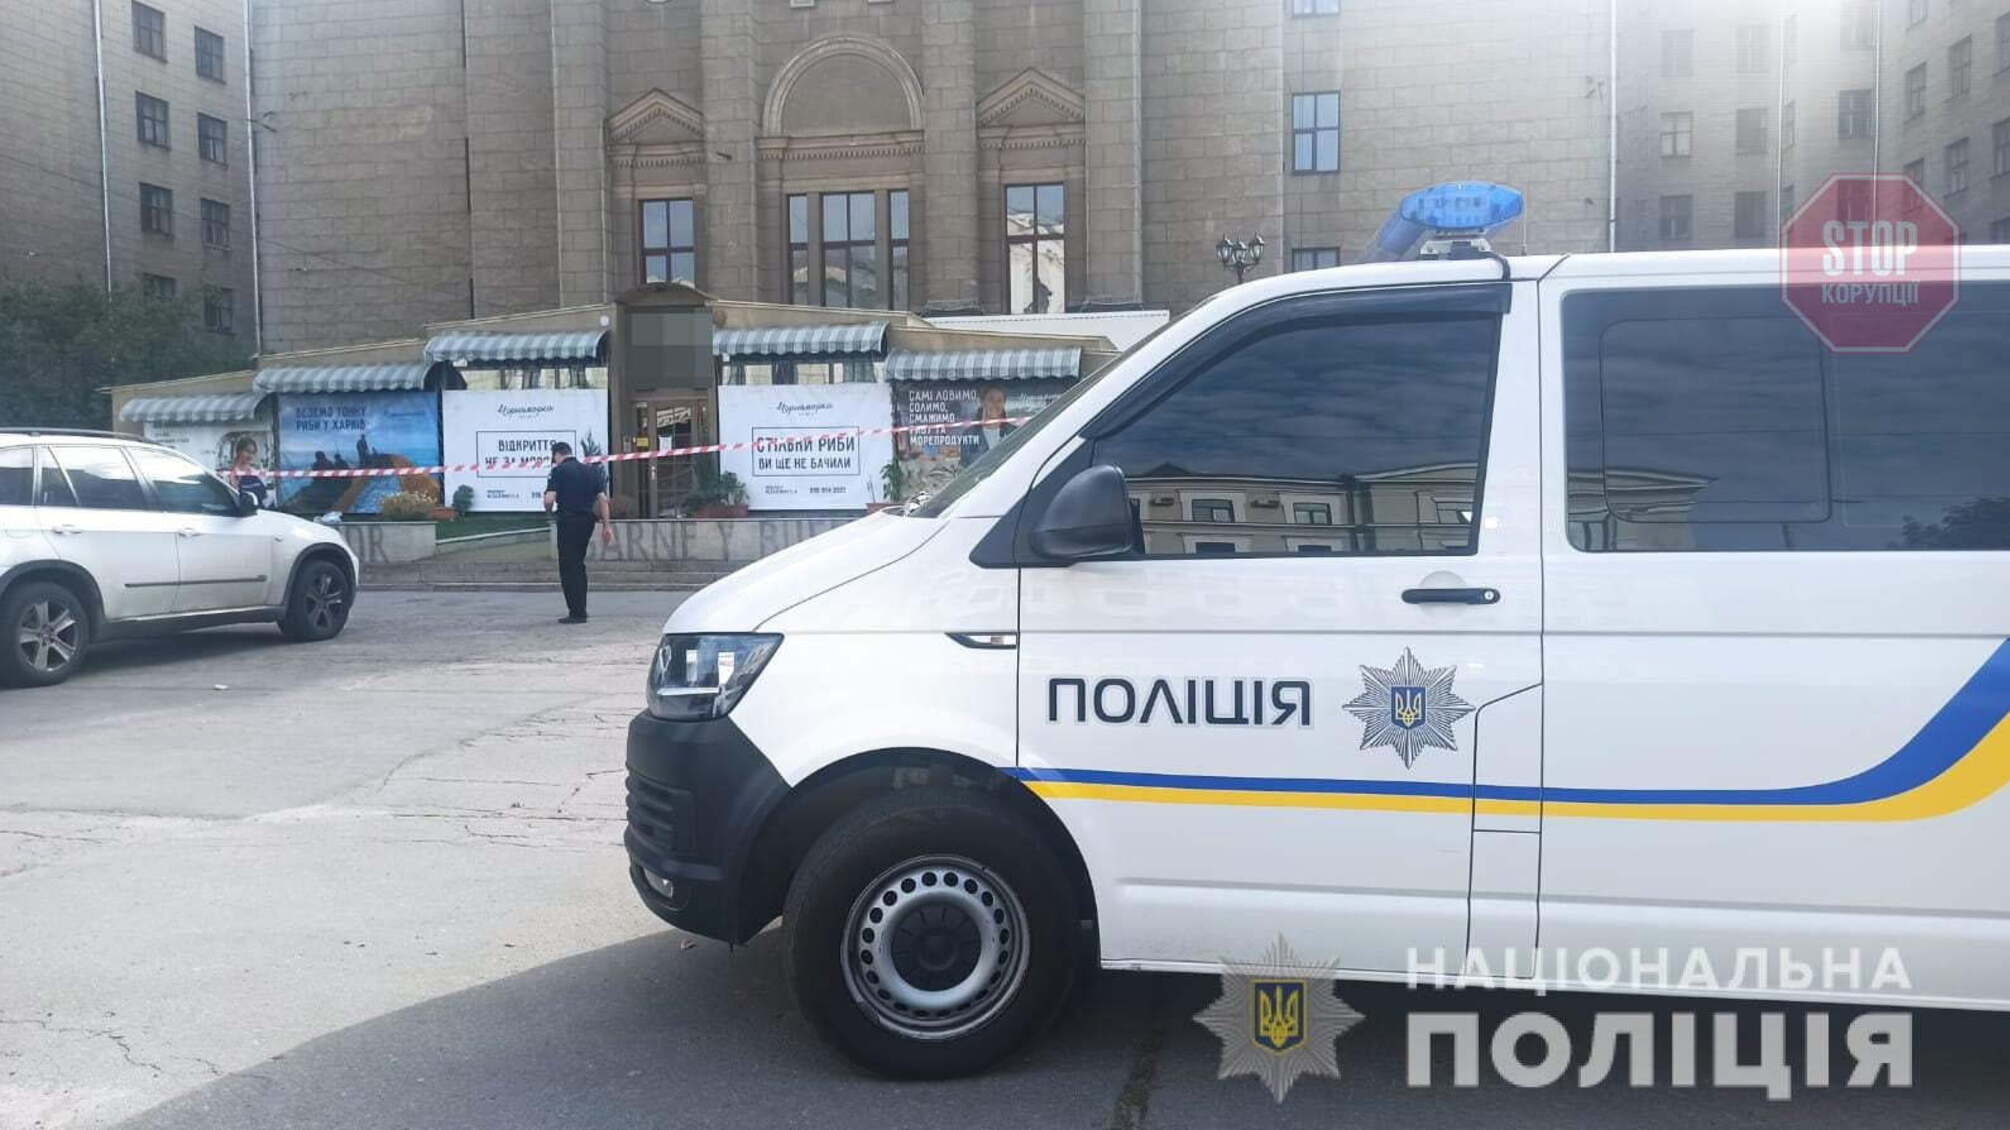 Самоубийство бизнесмена Олега Привалова: в полиции раскрыли новые подробности трагедии